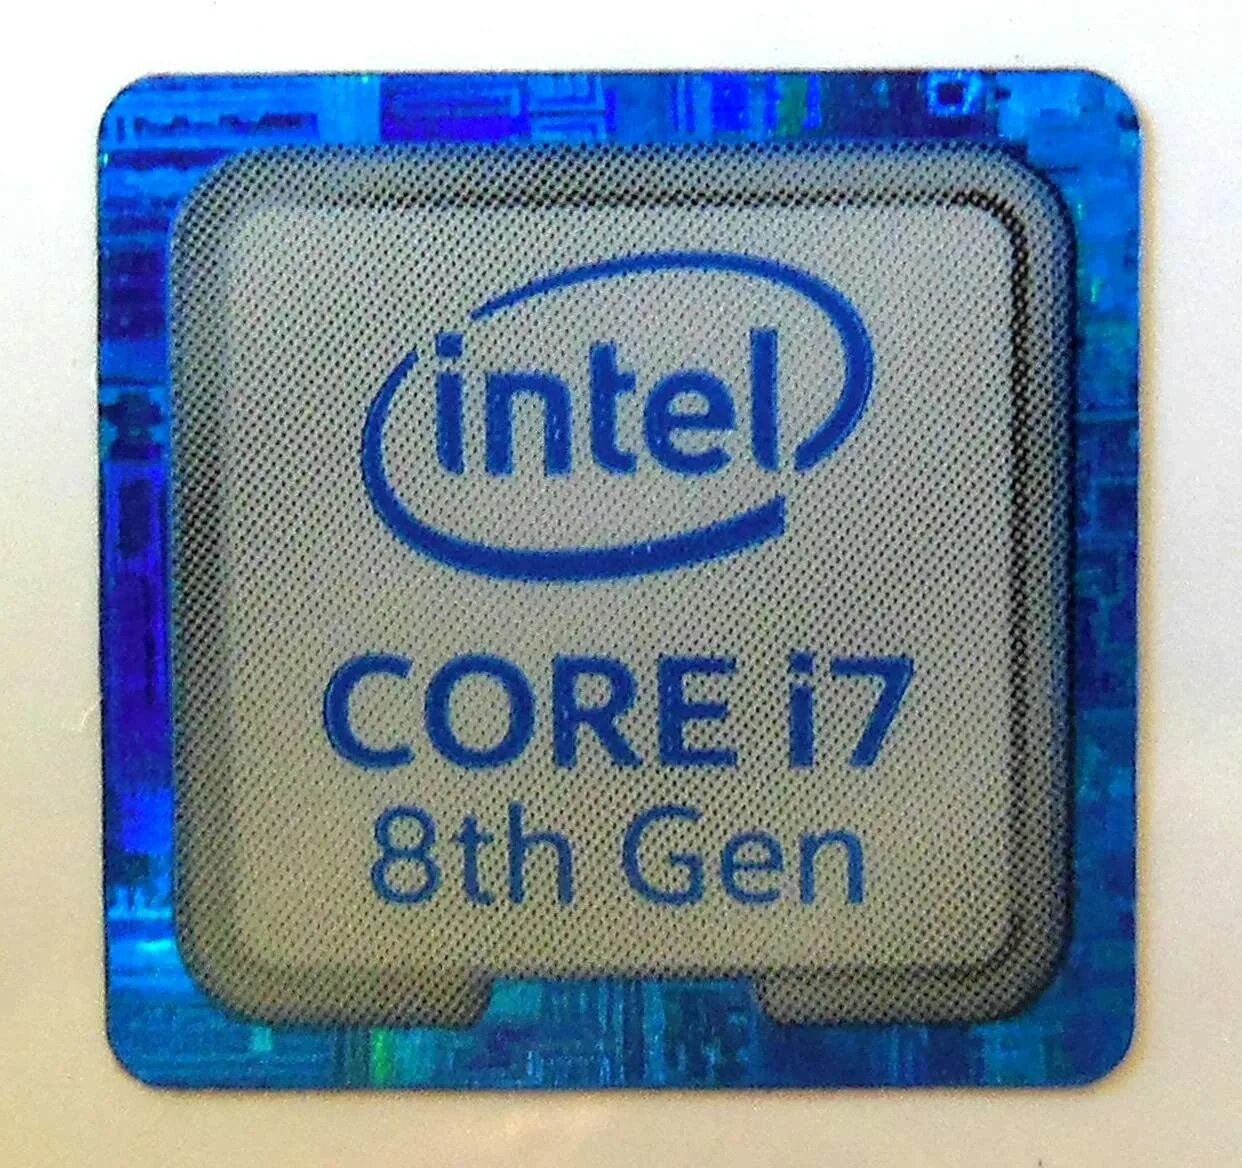 Intel Core i5 gen5. Intel Core 3th Gen. Intel Core i5 8th Gen. Процессор Intel Core i5 Gen 8.